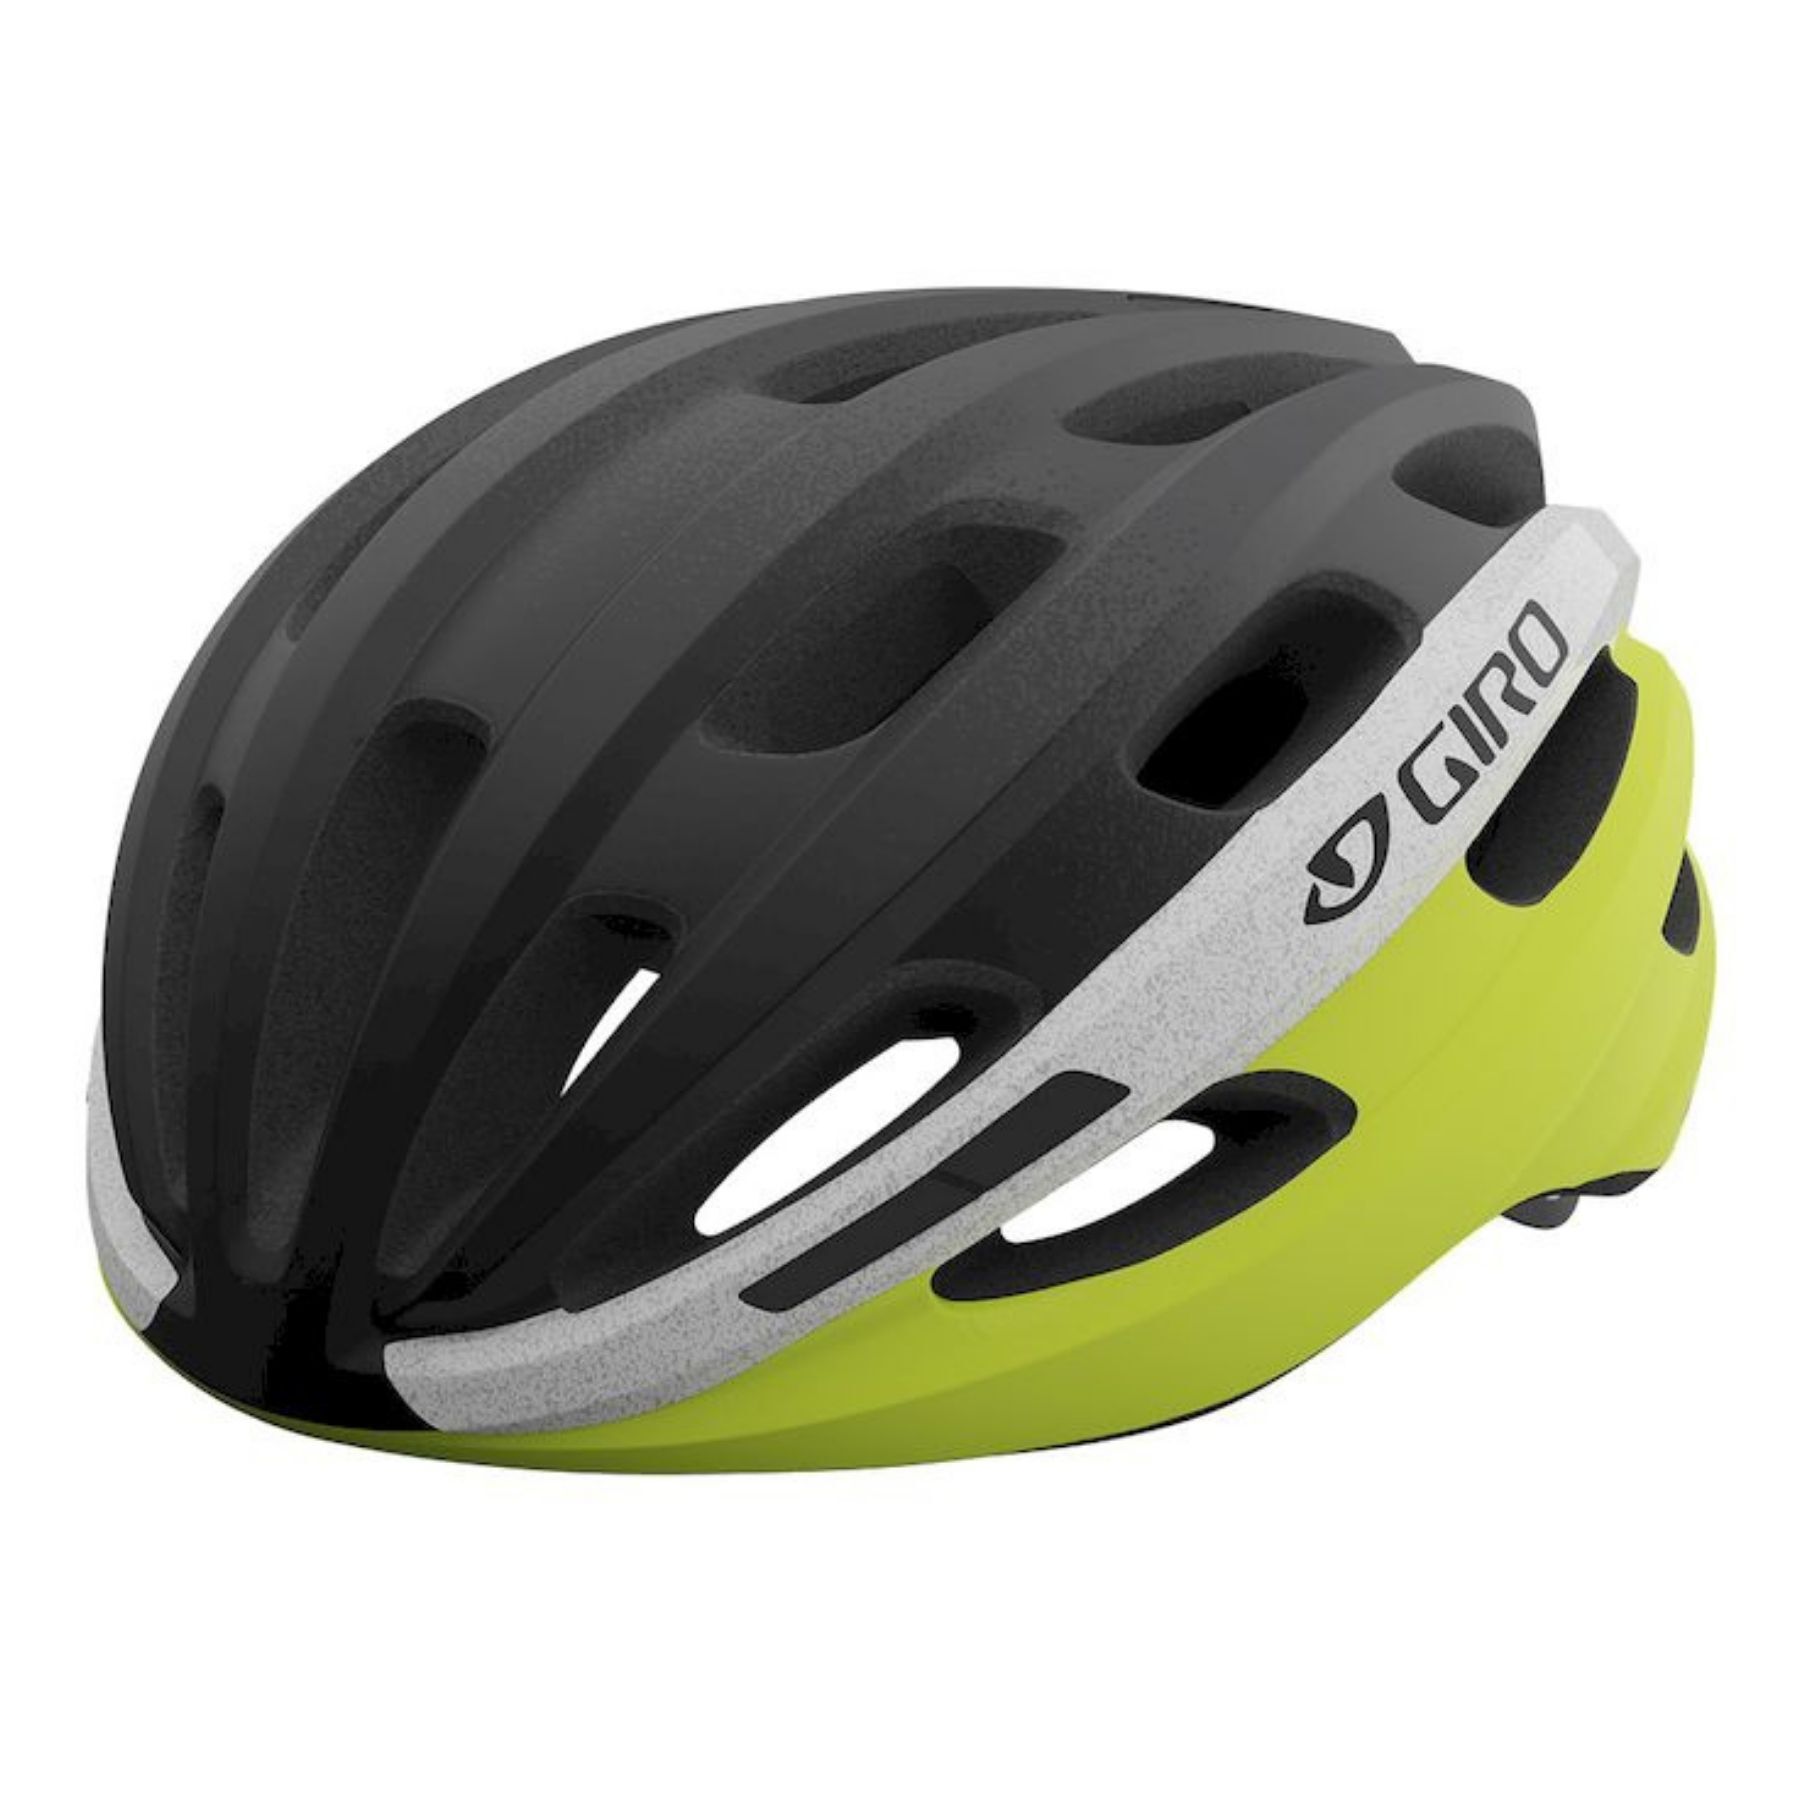 Giro Isode - Road bike helmet - Men's